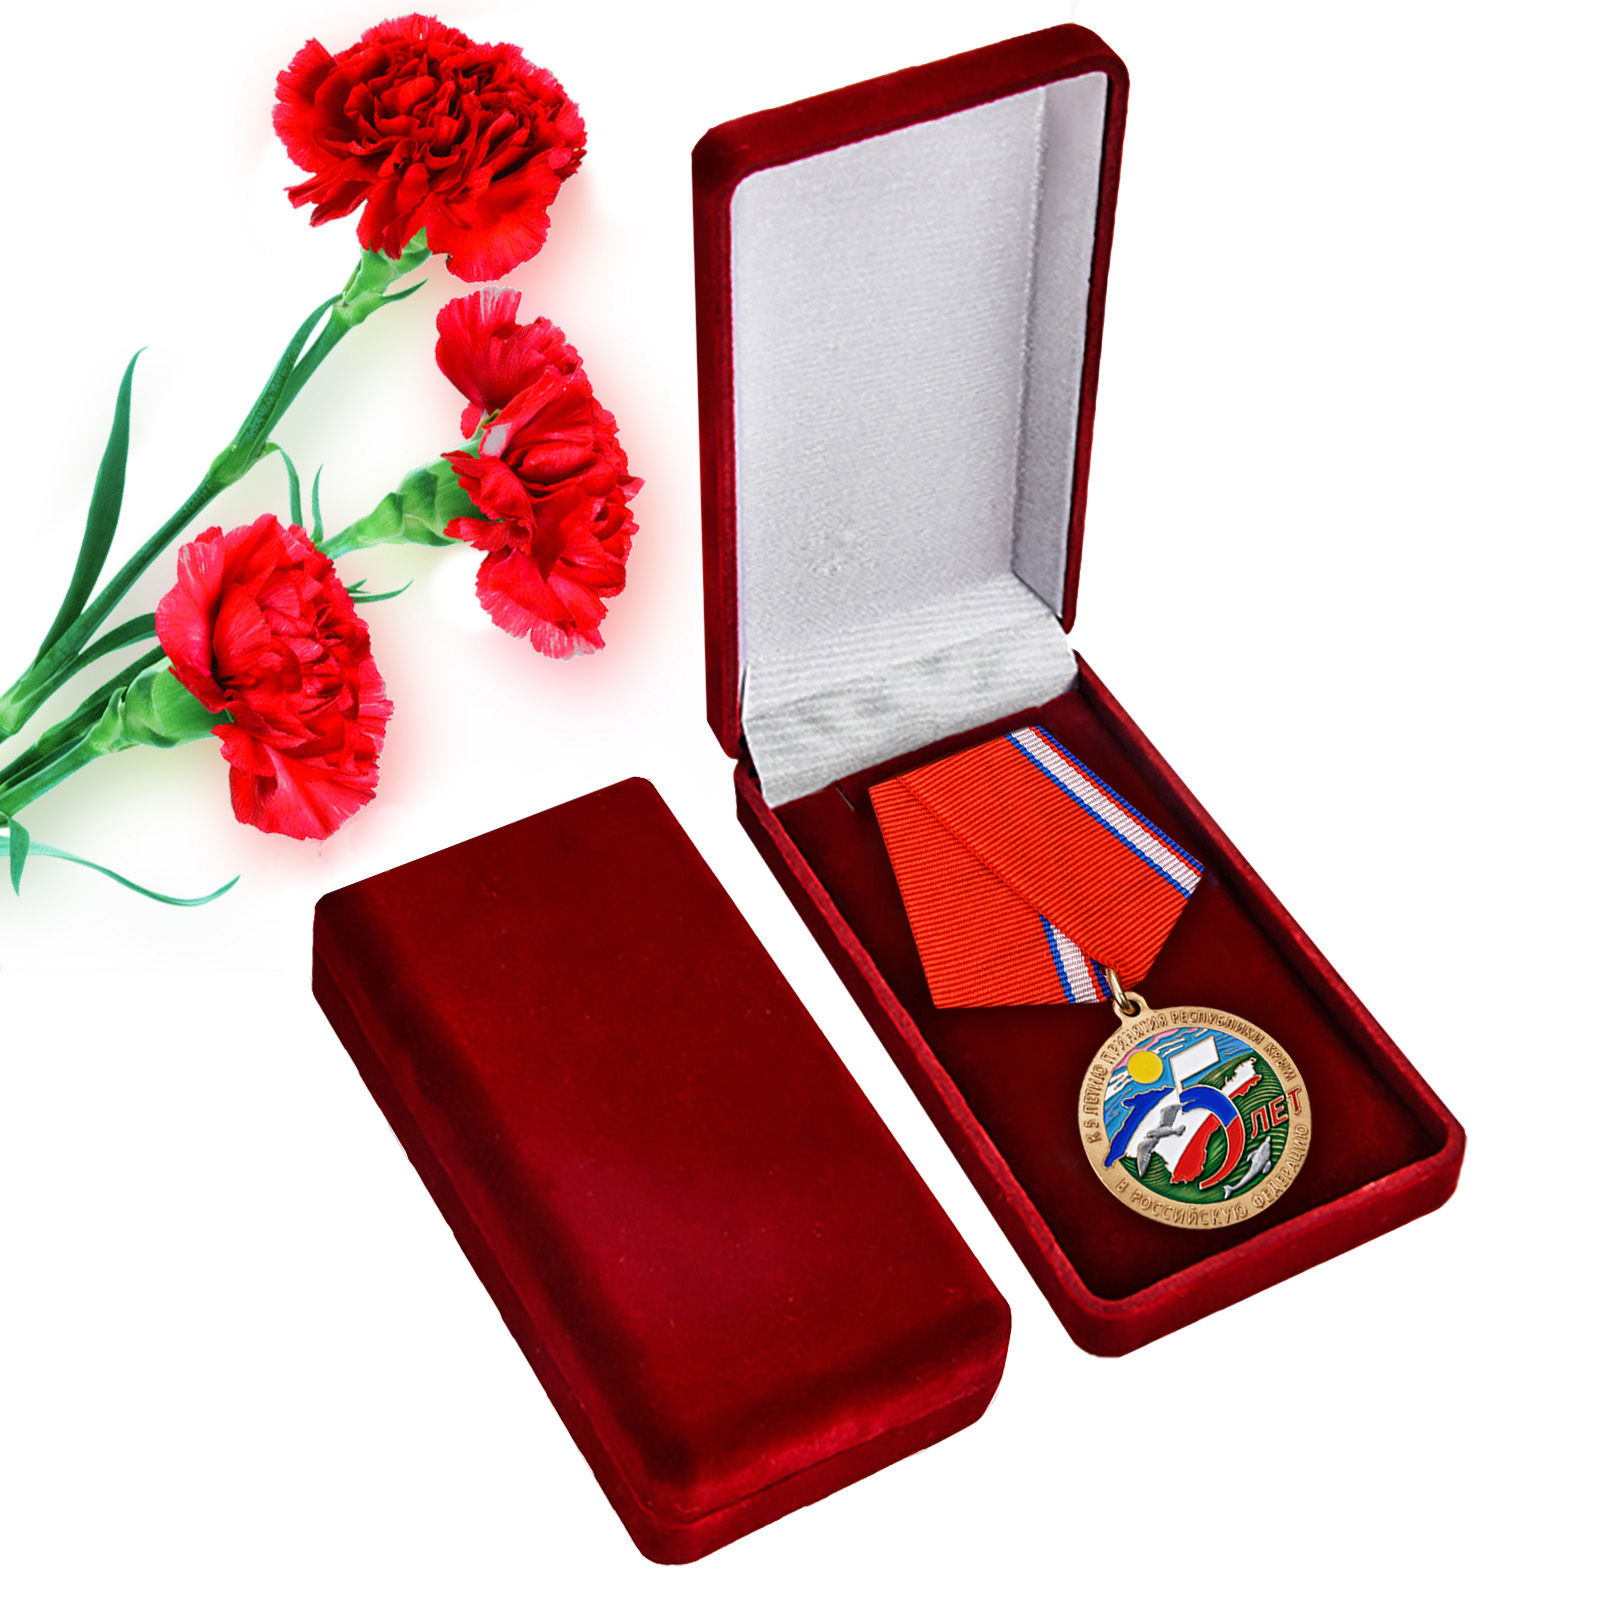 Купить латунную медаль к 5-летию принятия Республики Крым в Российскую Федерацию онлайн выгодно